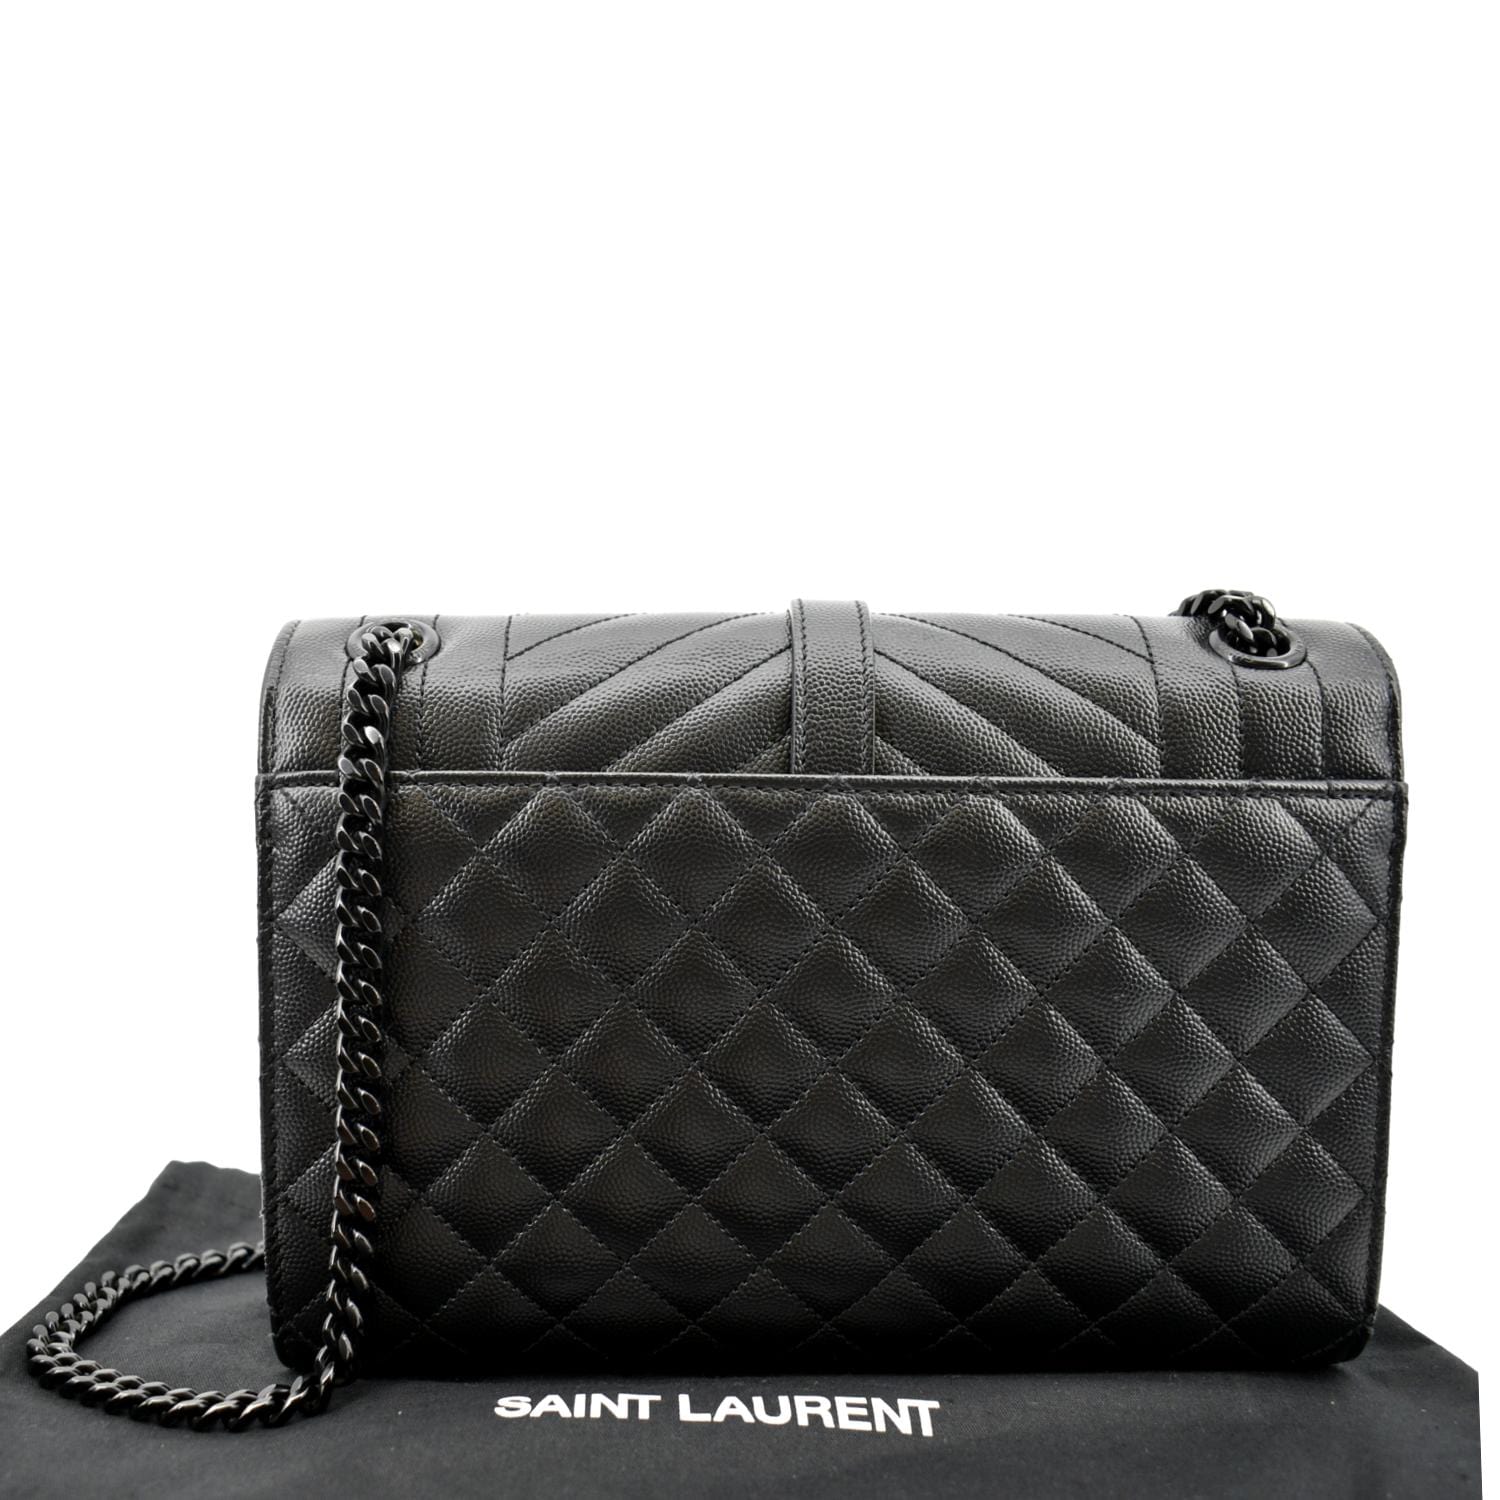 Authentic Saint Laurent black cloth dust bag - different sizes available